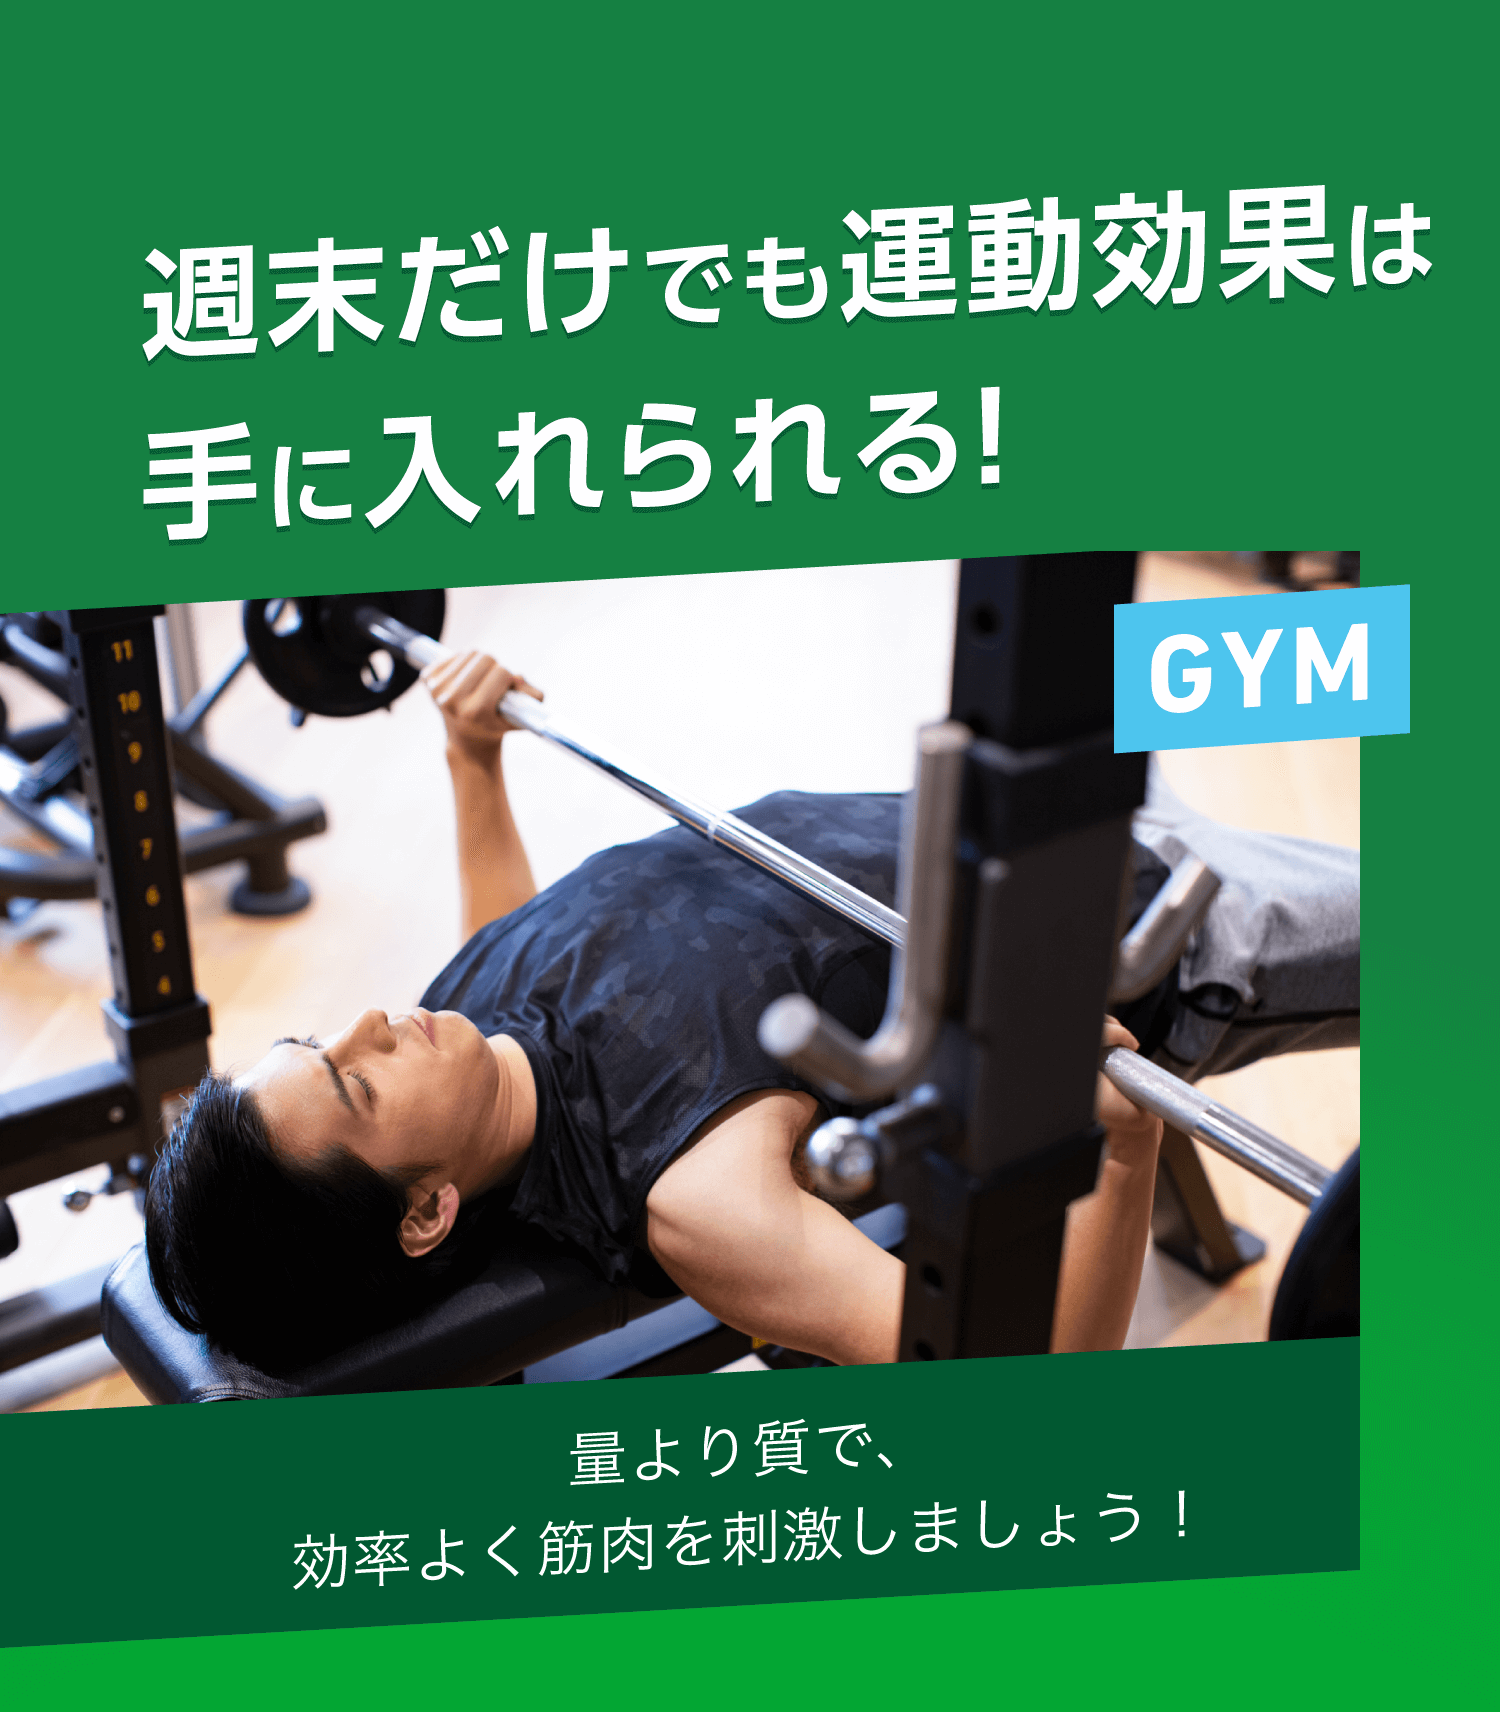 週末だけでも運動効果は手に入れられる！GYM 量より質で、効率よく筋肉を刺激しましょう！